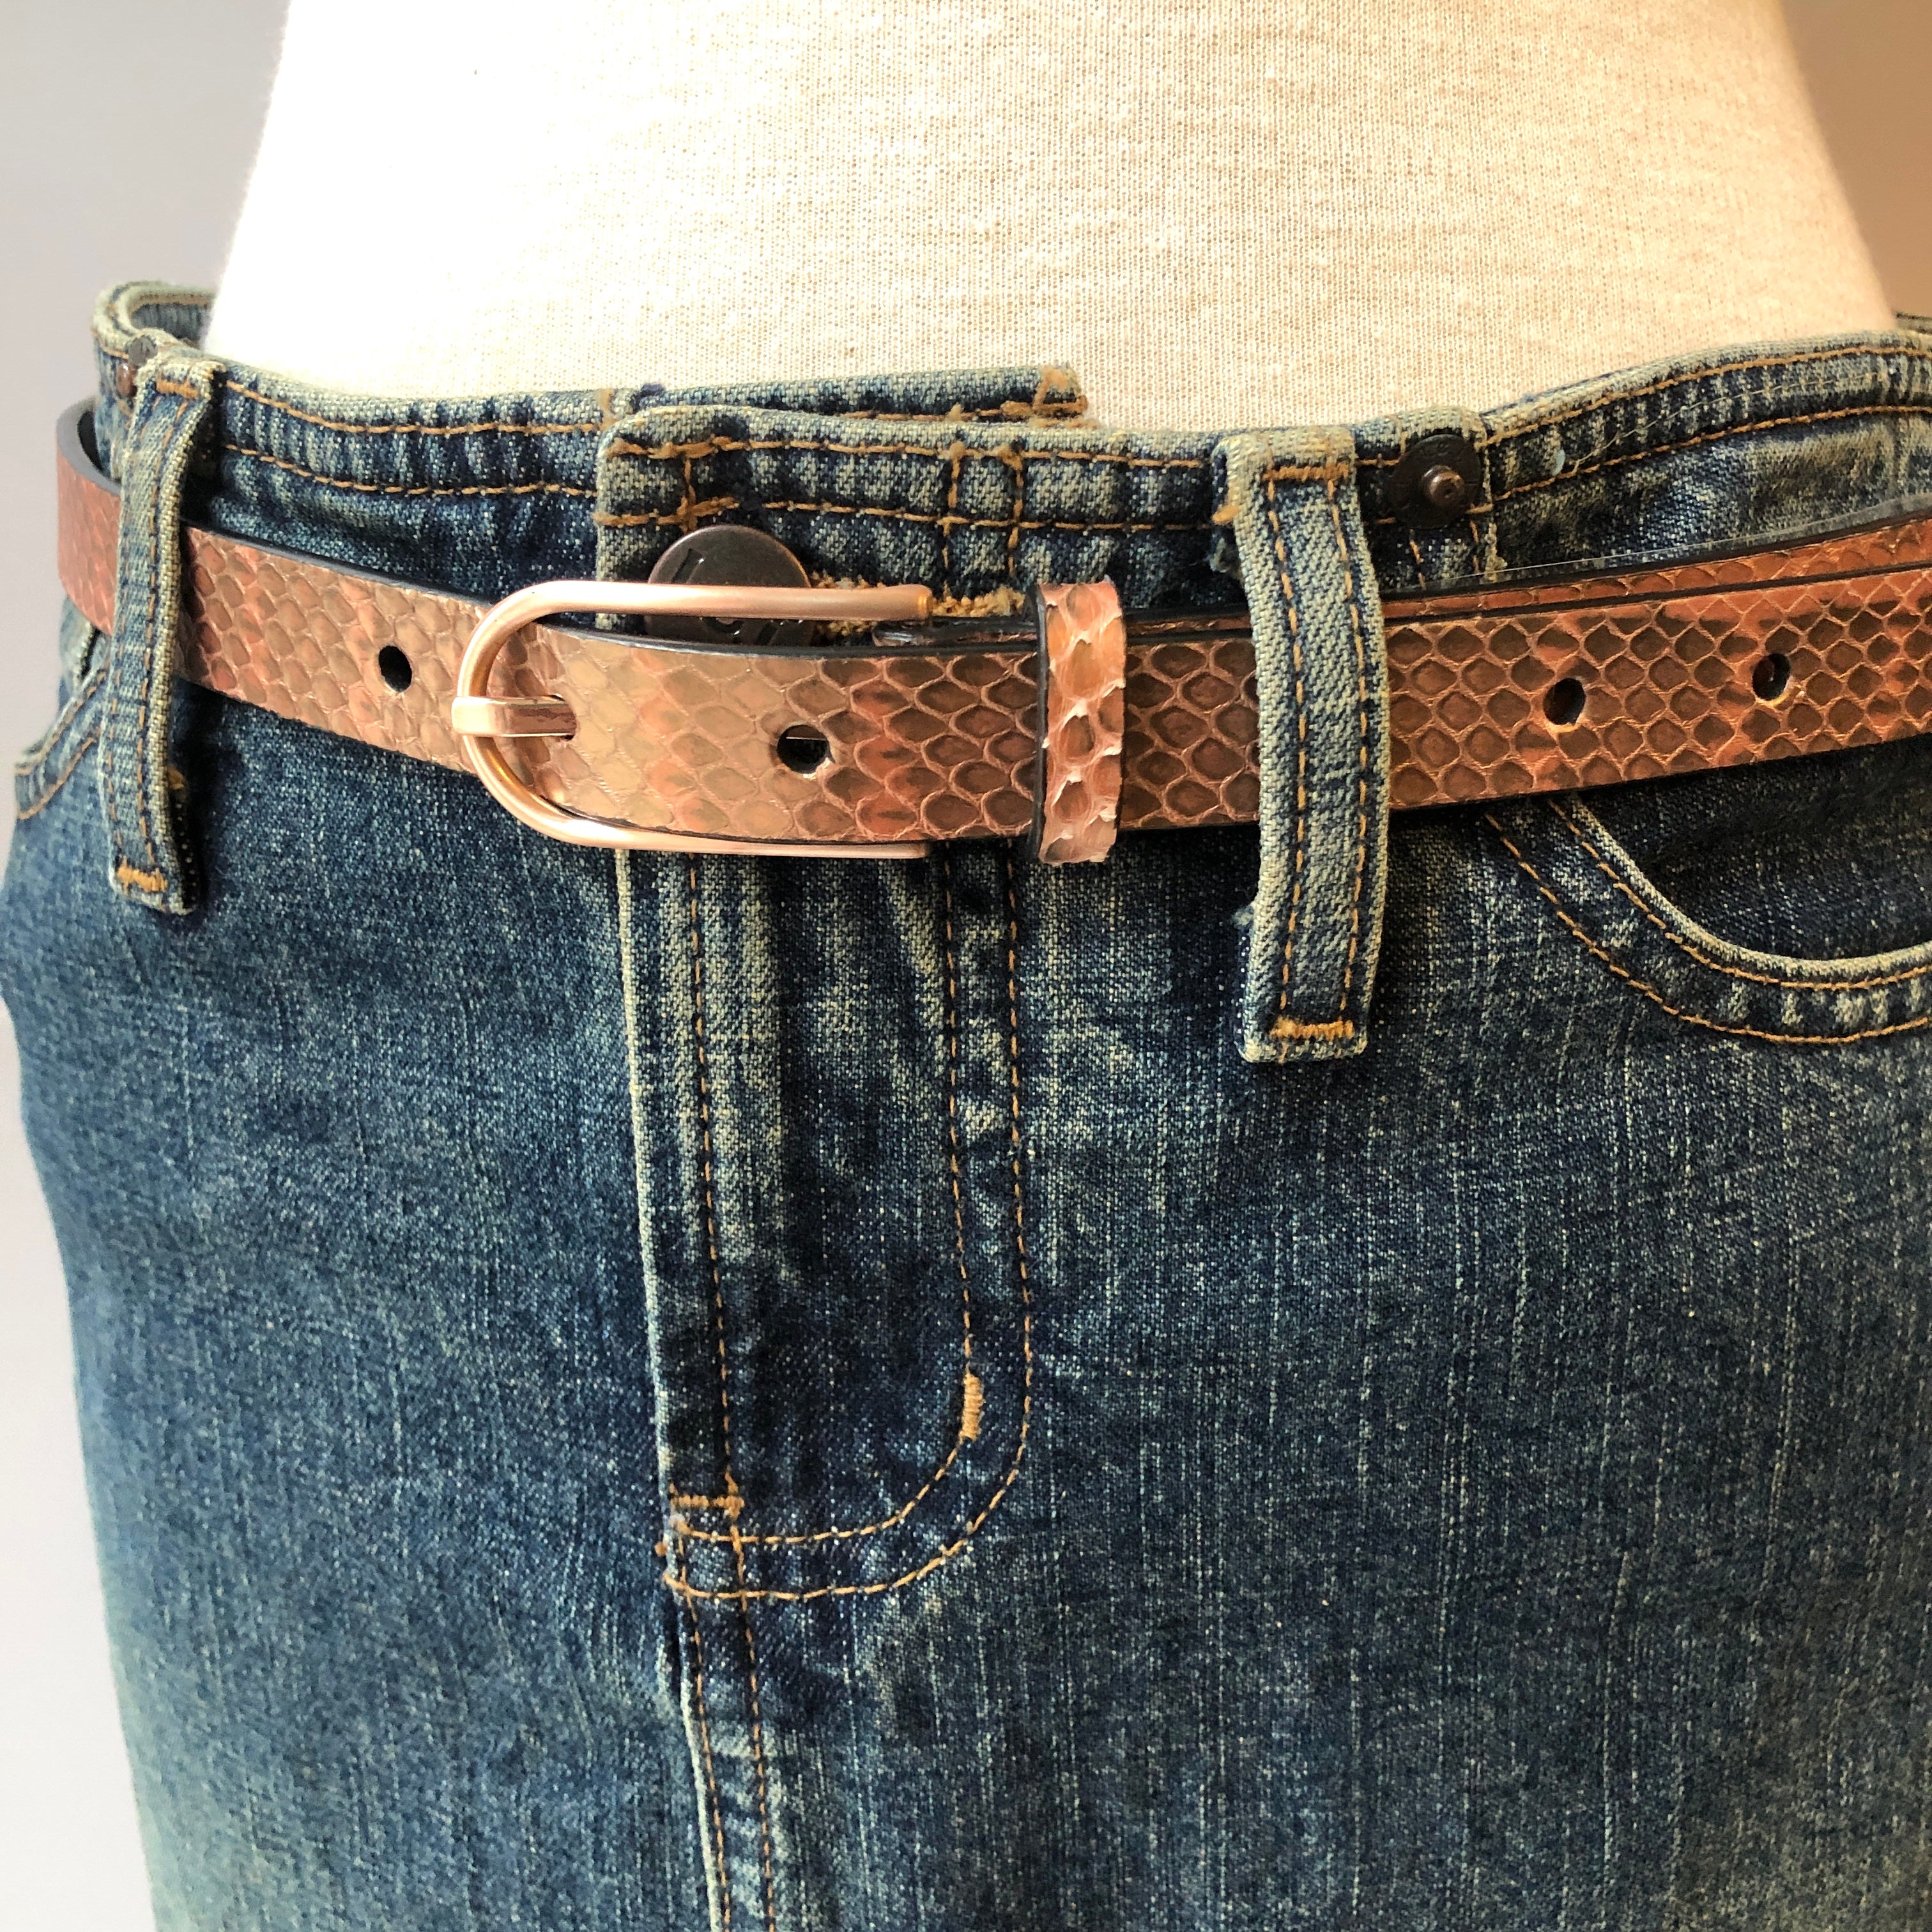 Calvin Klein Metallic Reptile Embossed Leather Slim Belt, Size Medium